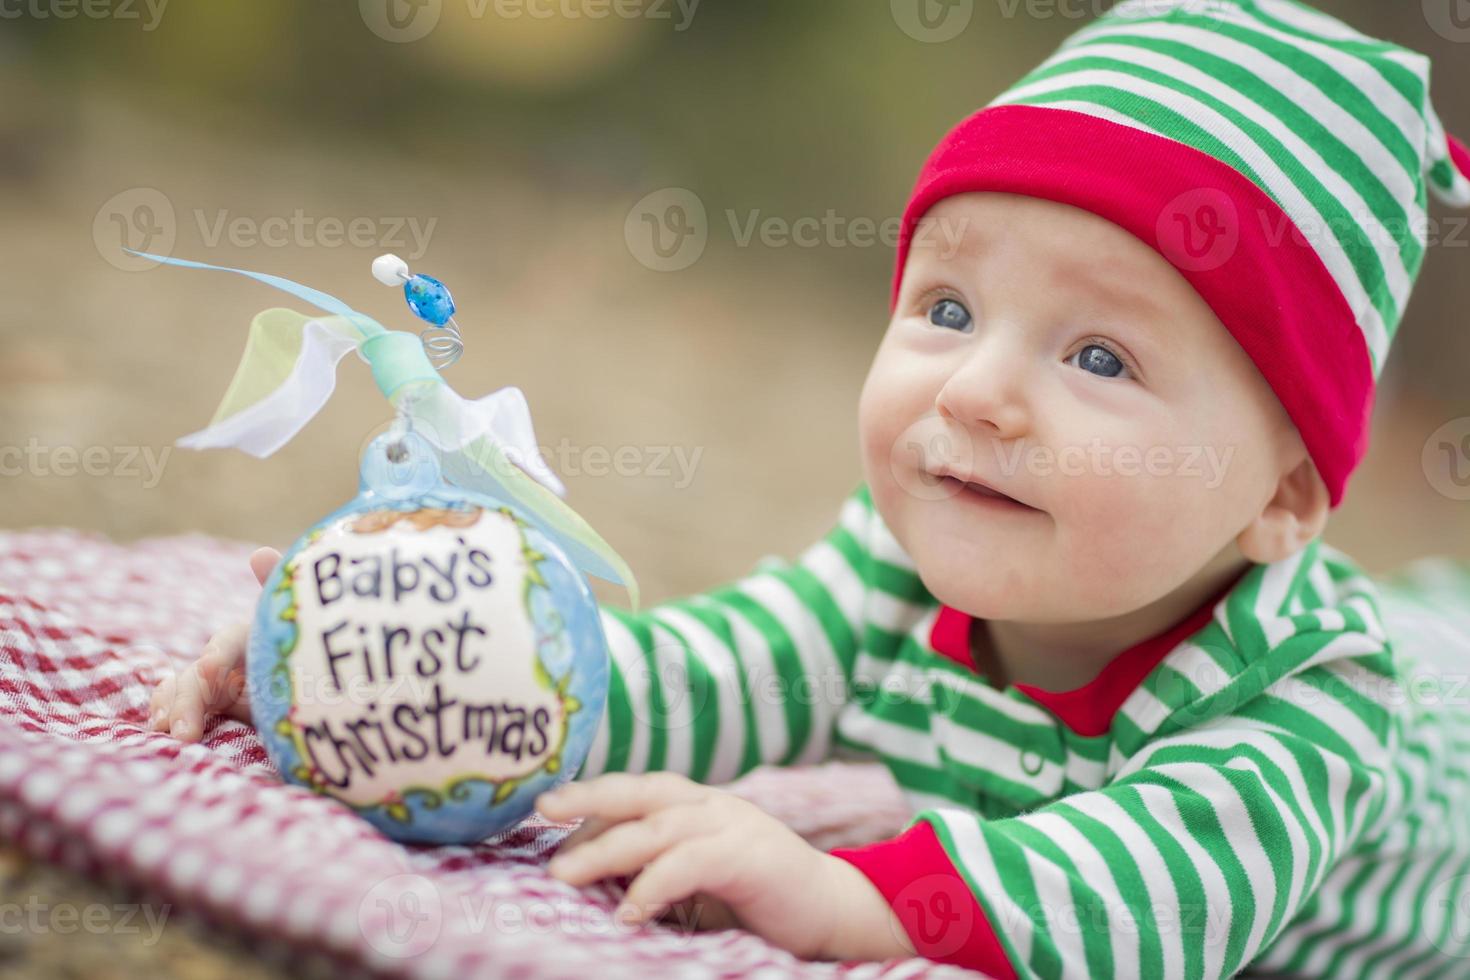 Säuglingsbaby auf Decke mit erstem Weihnachtsschmuck des Babys foto